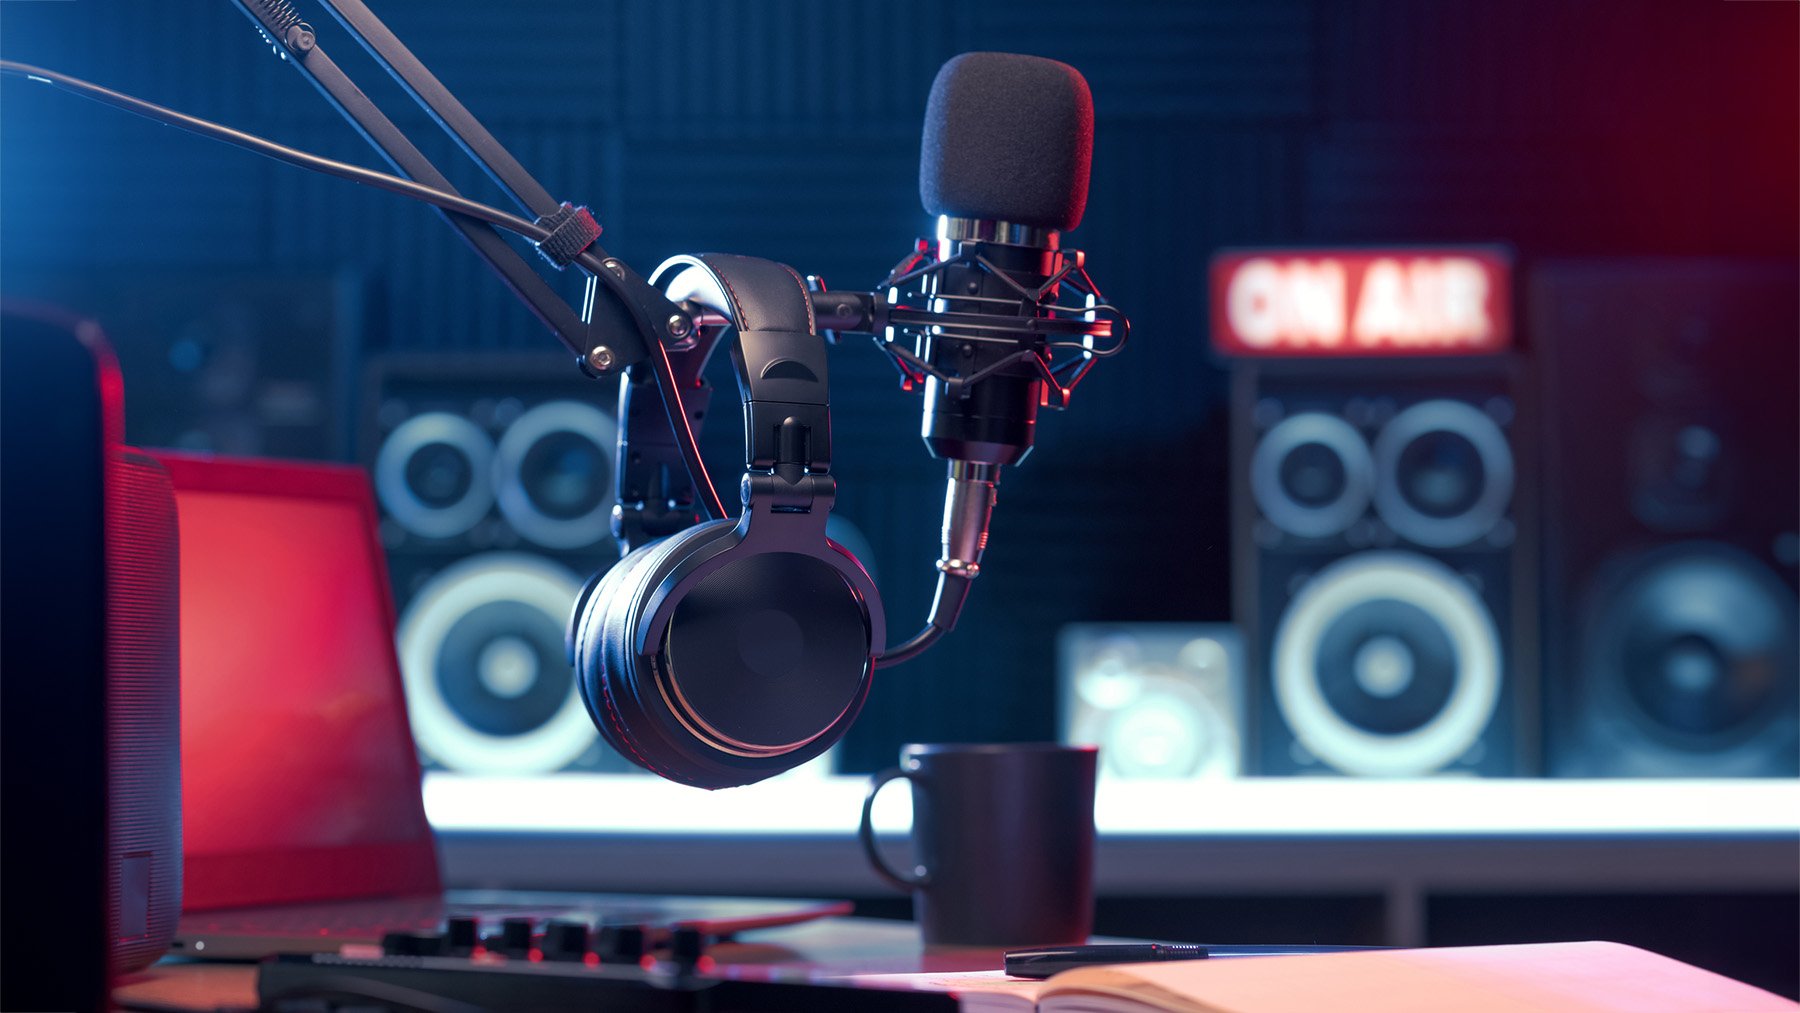 Auriculares y micrófono en la estación de radio